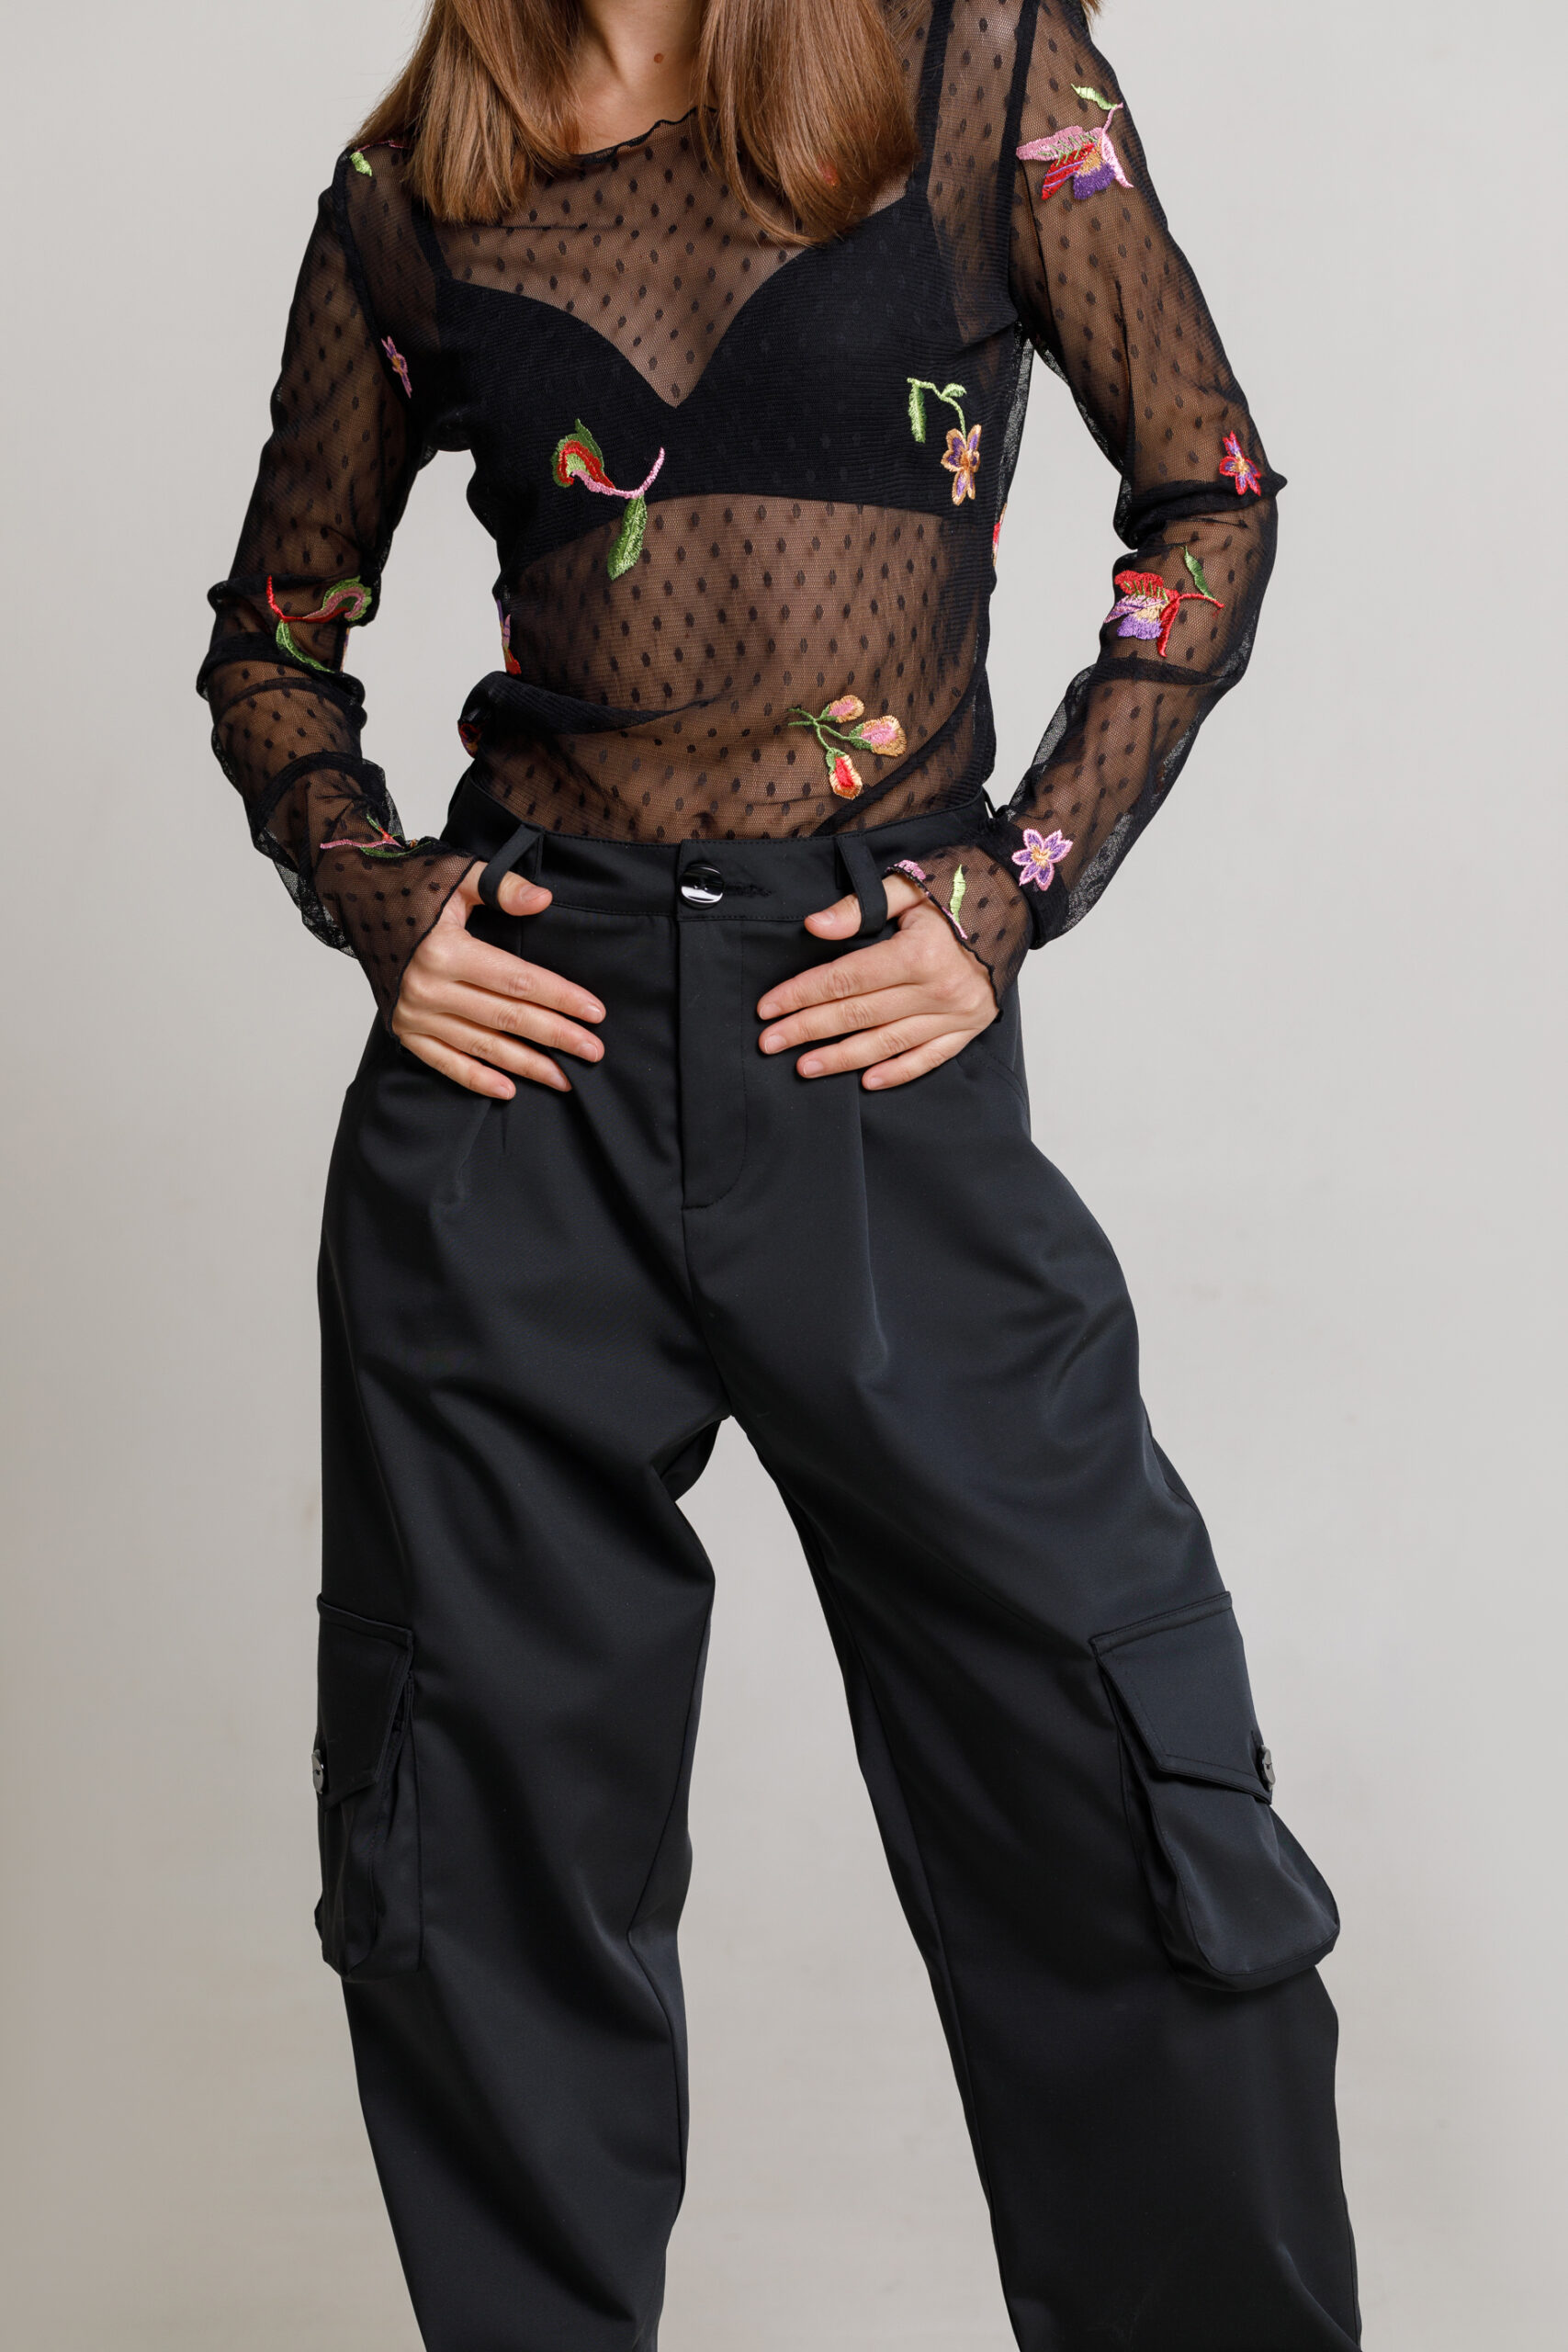 Pantalon COLL casual din tercot negru. Materiale naturale, design unicat, cu broderie si aplicatii handmade